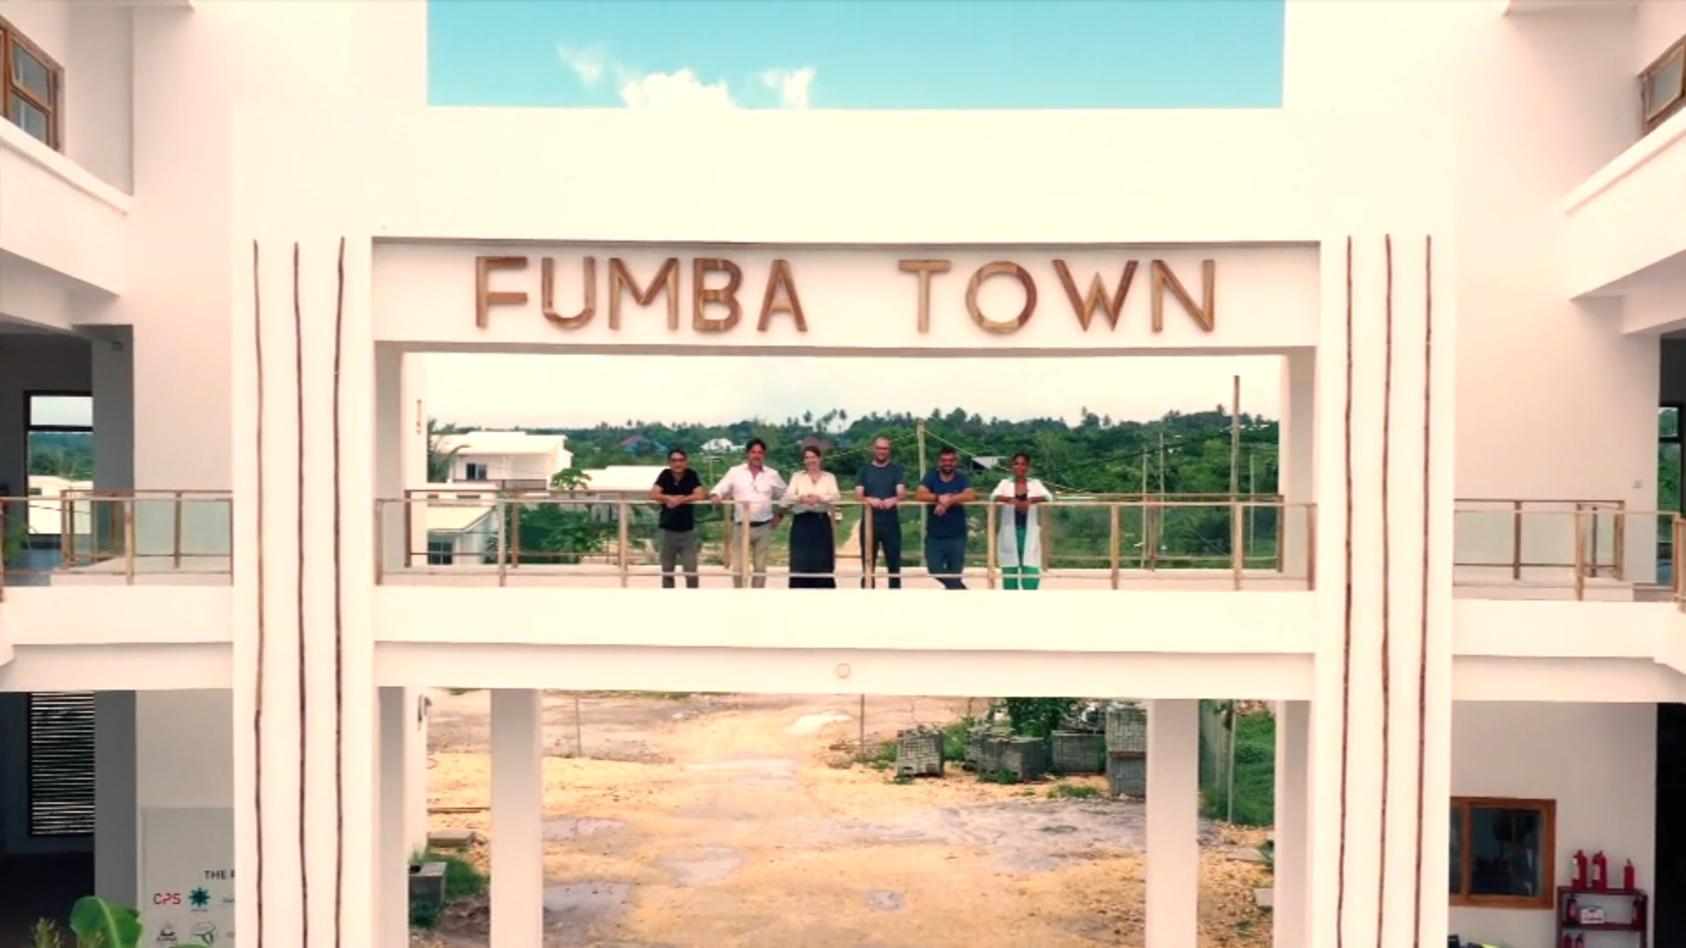 Günstig leben im Paradies: Wie Rentner auf Sansibar leben Zukunftsiedlung"Fumba Town"